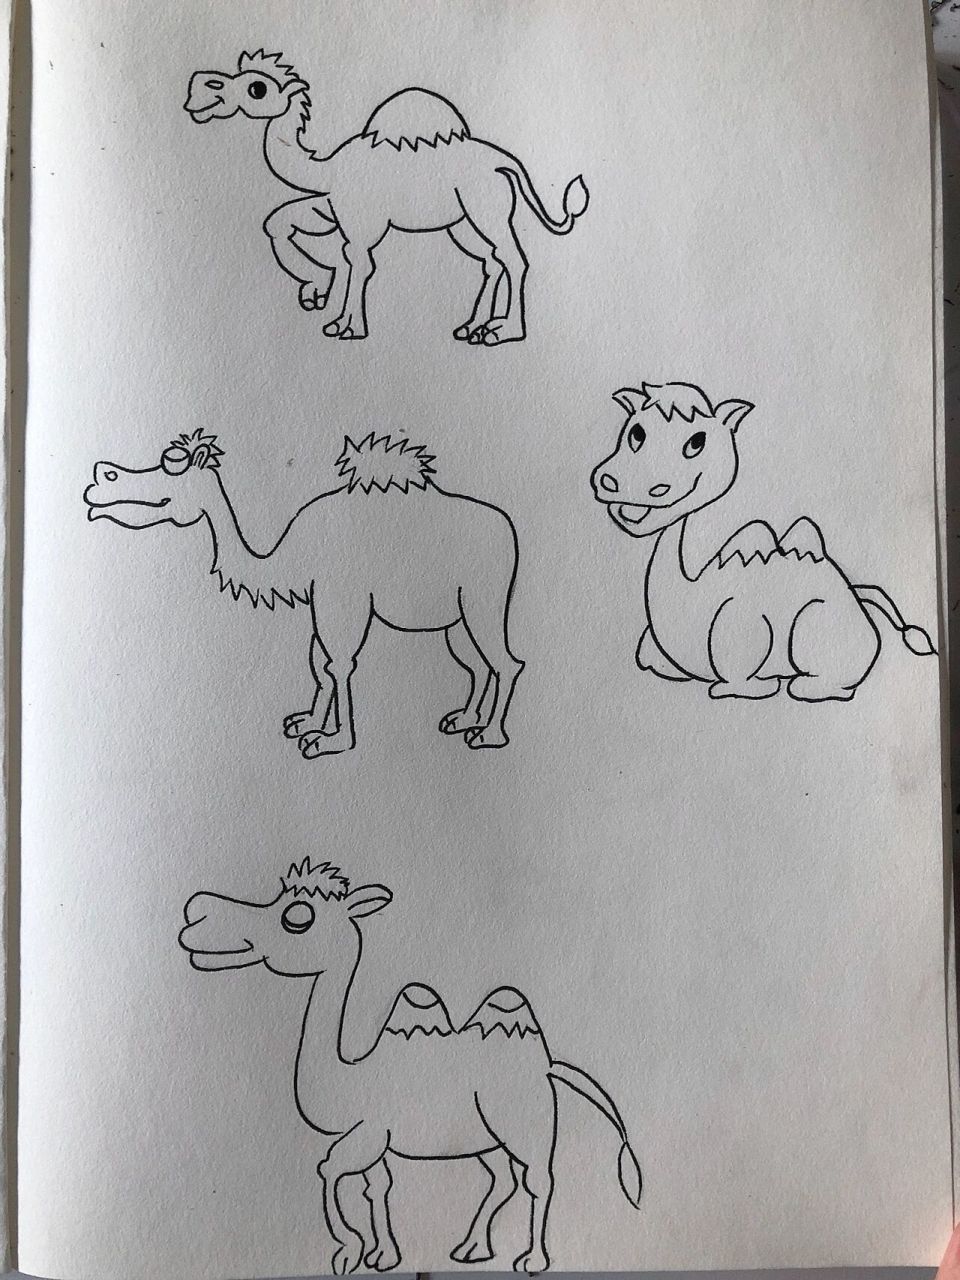 骆驼简笔画怎么画图片